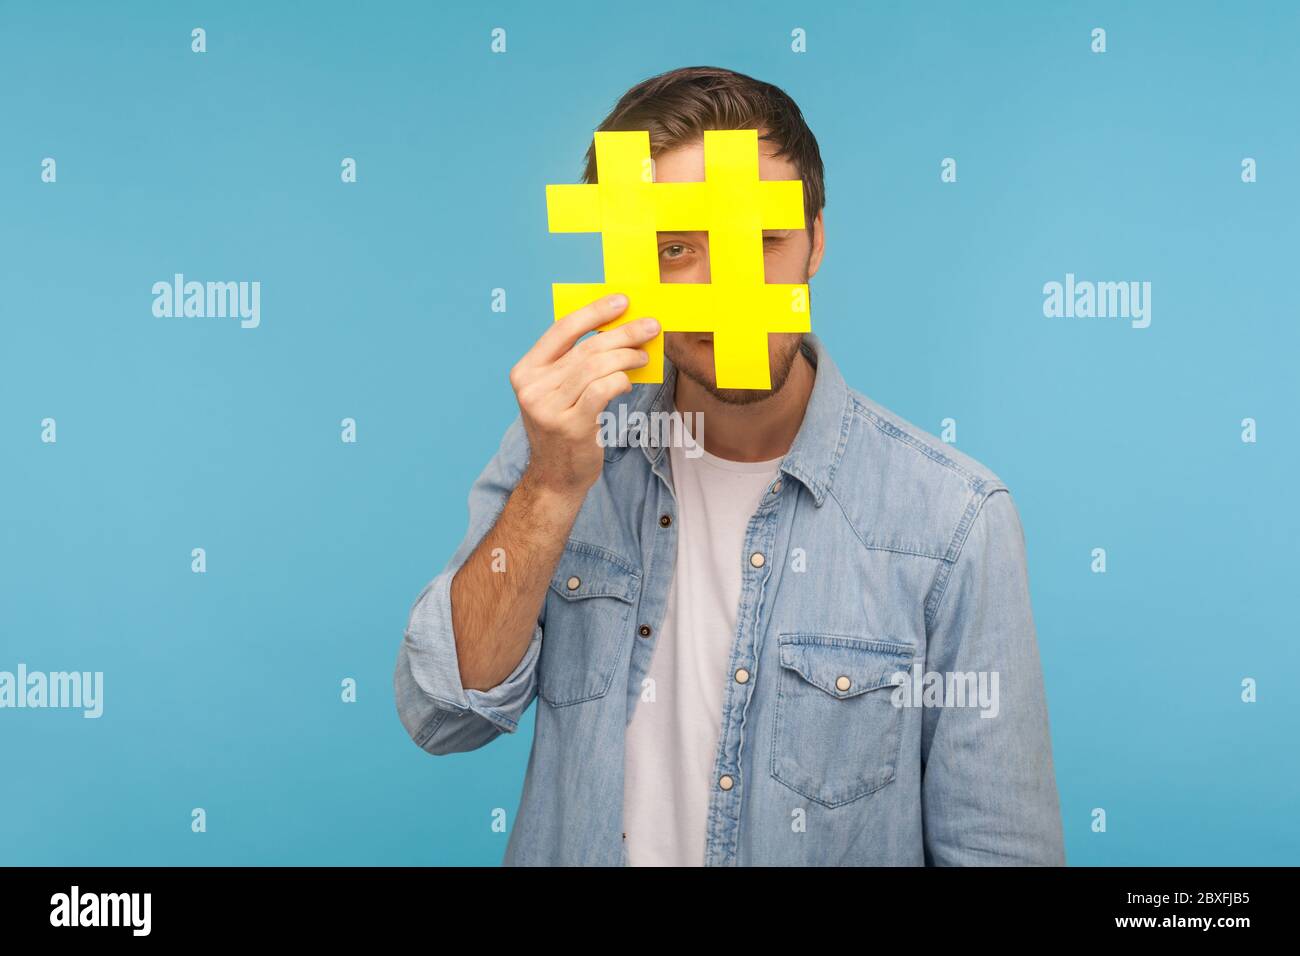 Portrait d'un homme en chemise denim, à travers le grand symbole hashtag jaune, debout isolé sur fond bleu avec espace pour le texte marqué, pop Banque D'Images